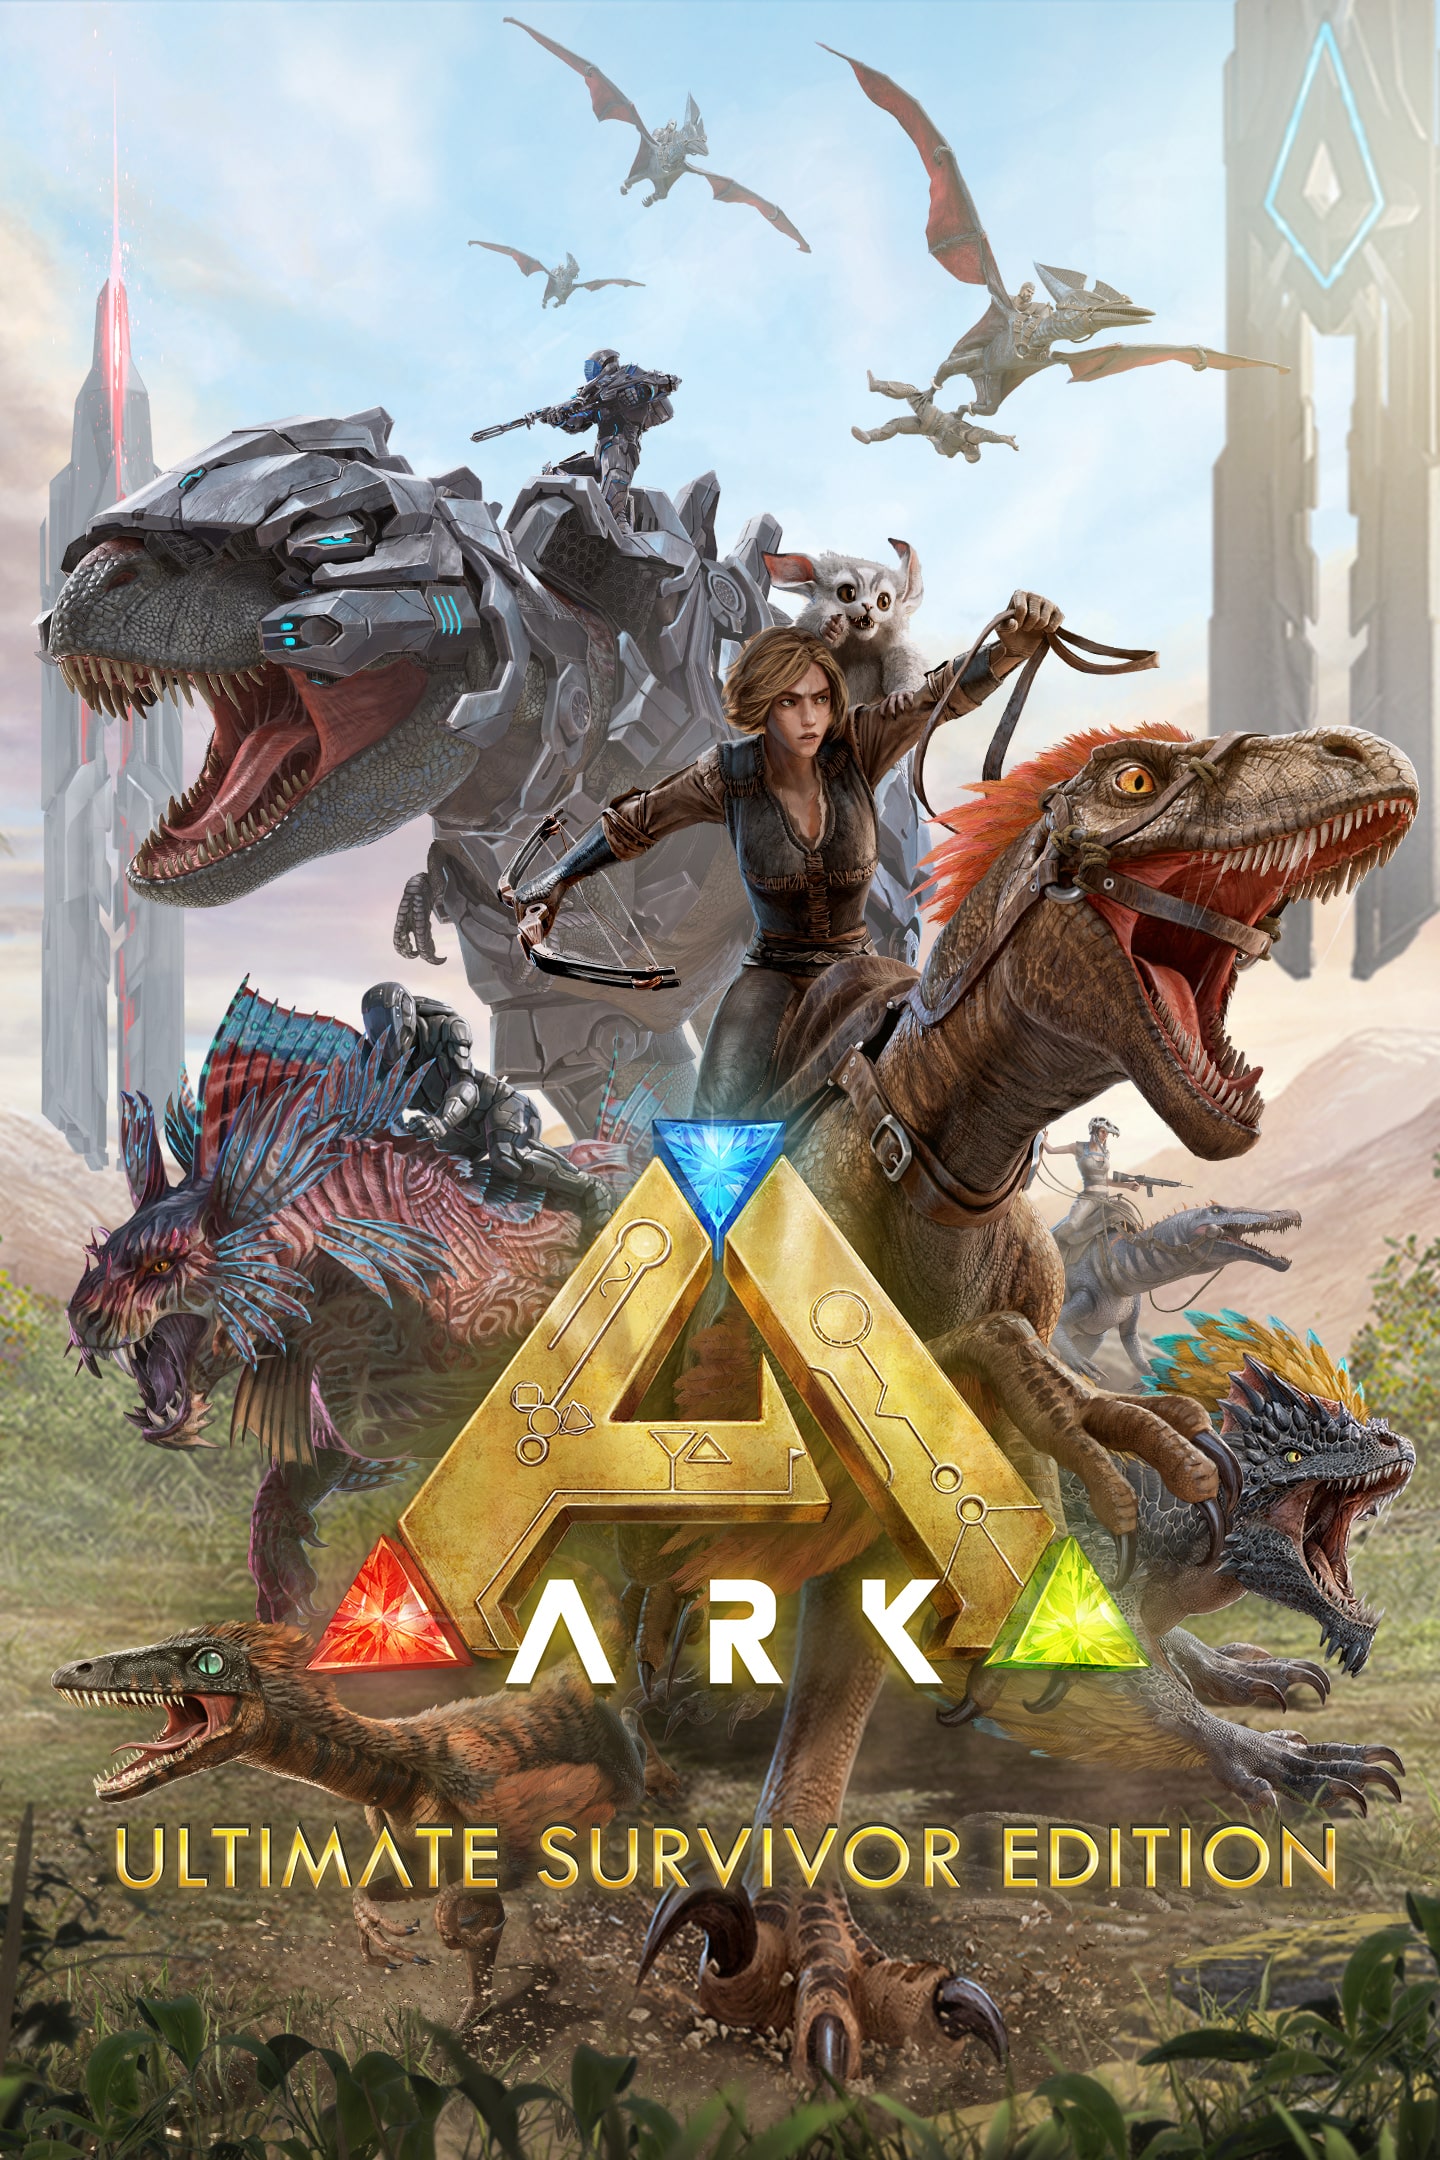 Start Games - ARK Survival Evolved ARK Survival Evolved é um jogo do gênero  Ação-Aventura com um mapa Mundo Aberto. O jogo consiste em sobreviver em  uma ilha repleta de dinossauros e